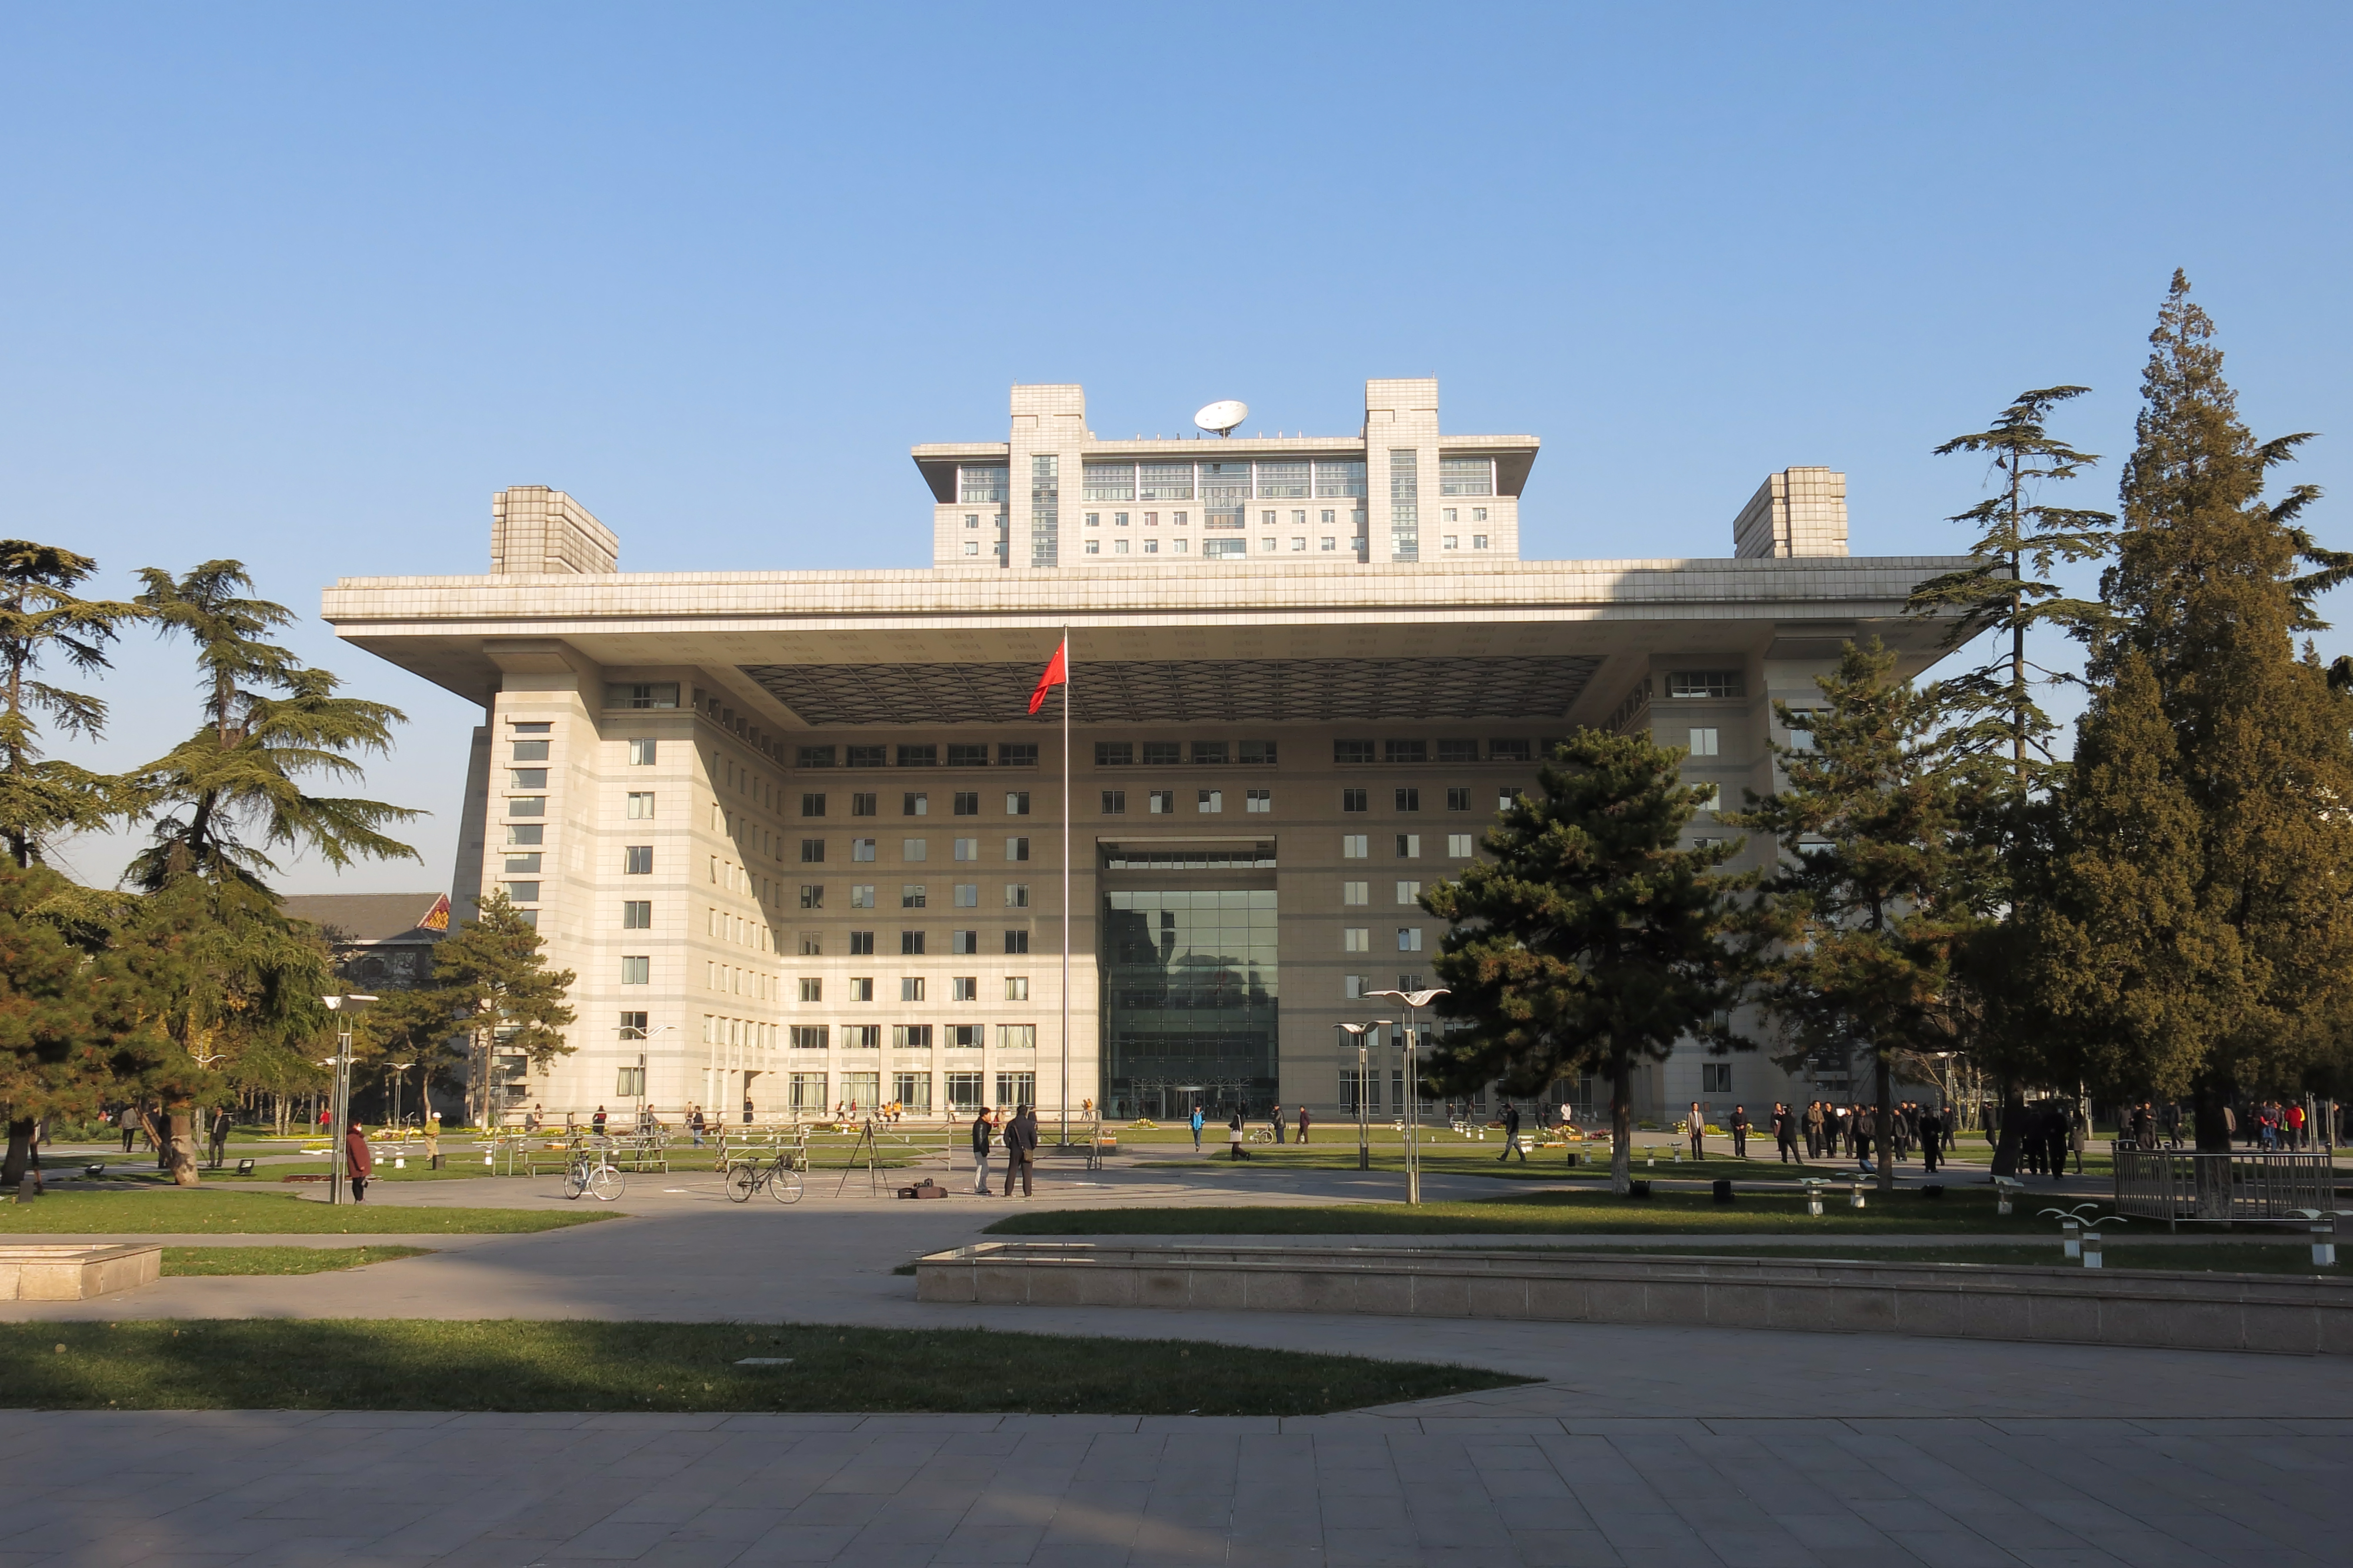 пекин университеты